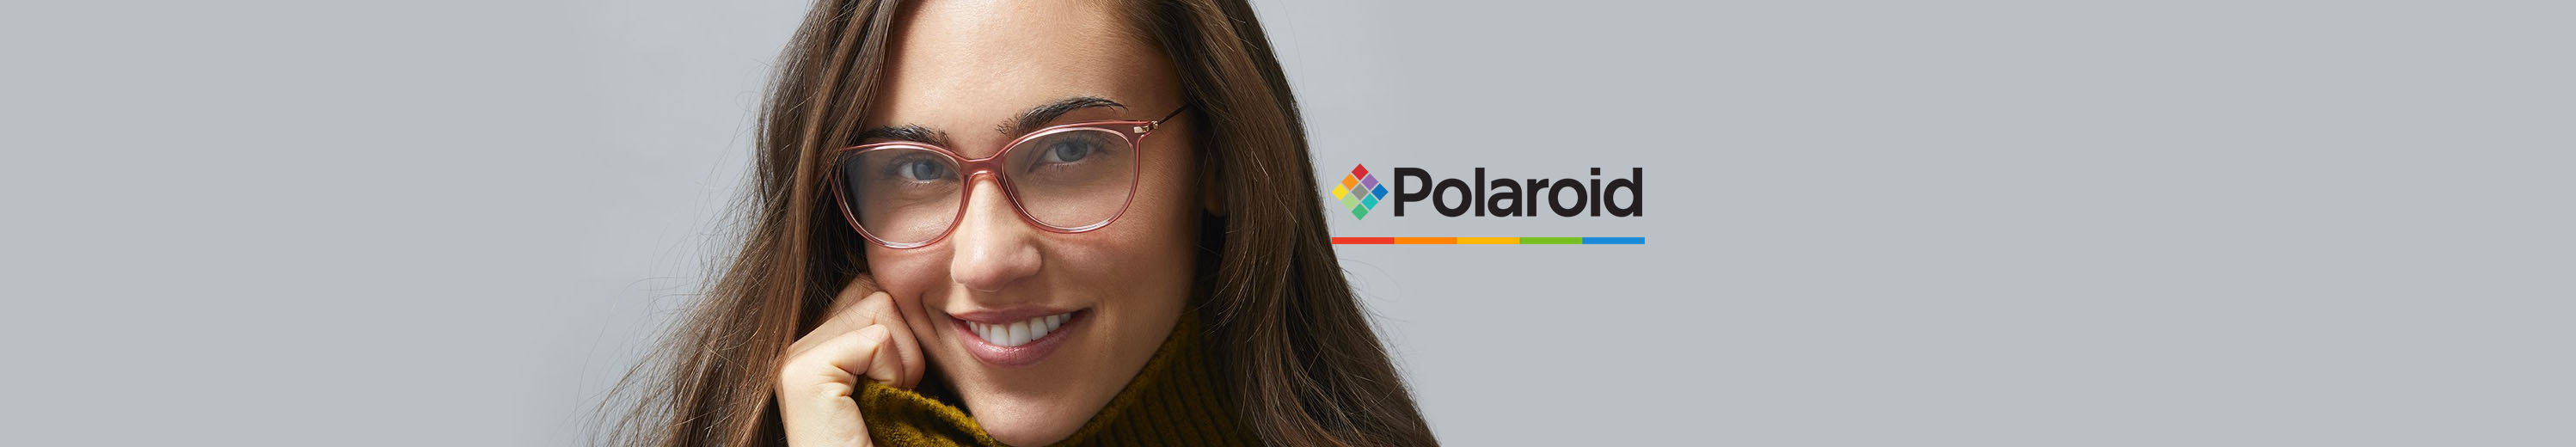 Polaroid Eyeglasses for Women